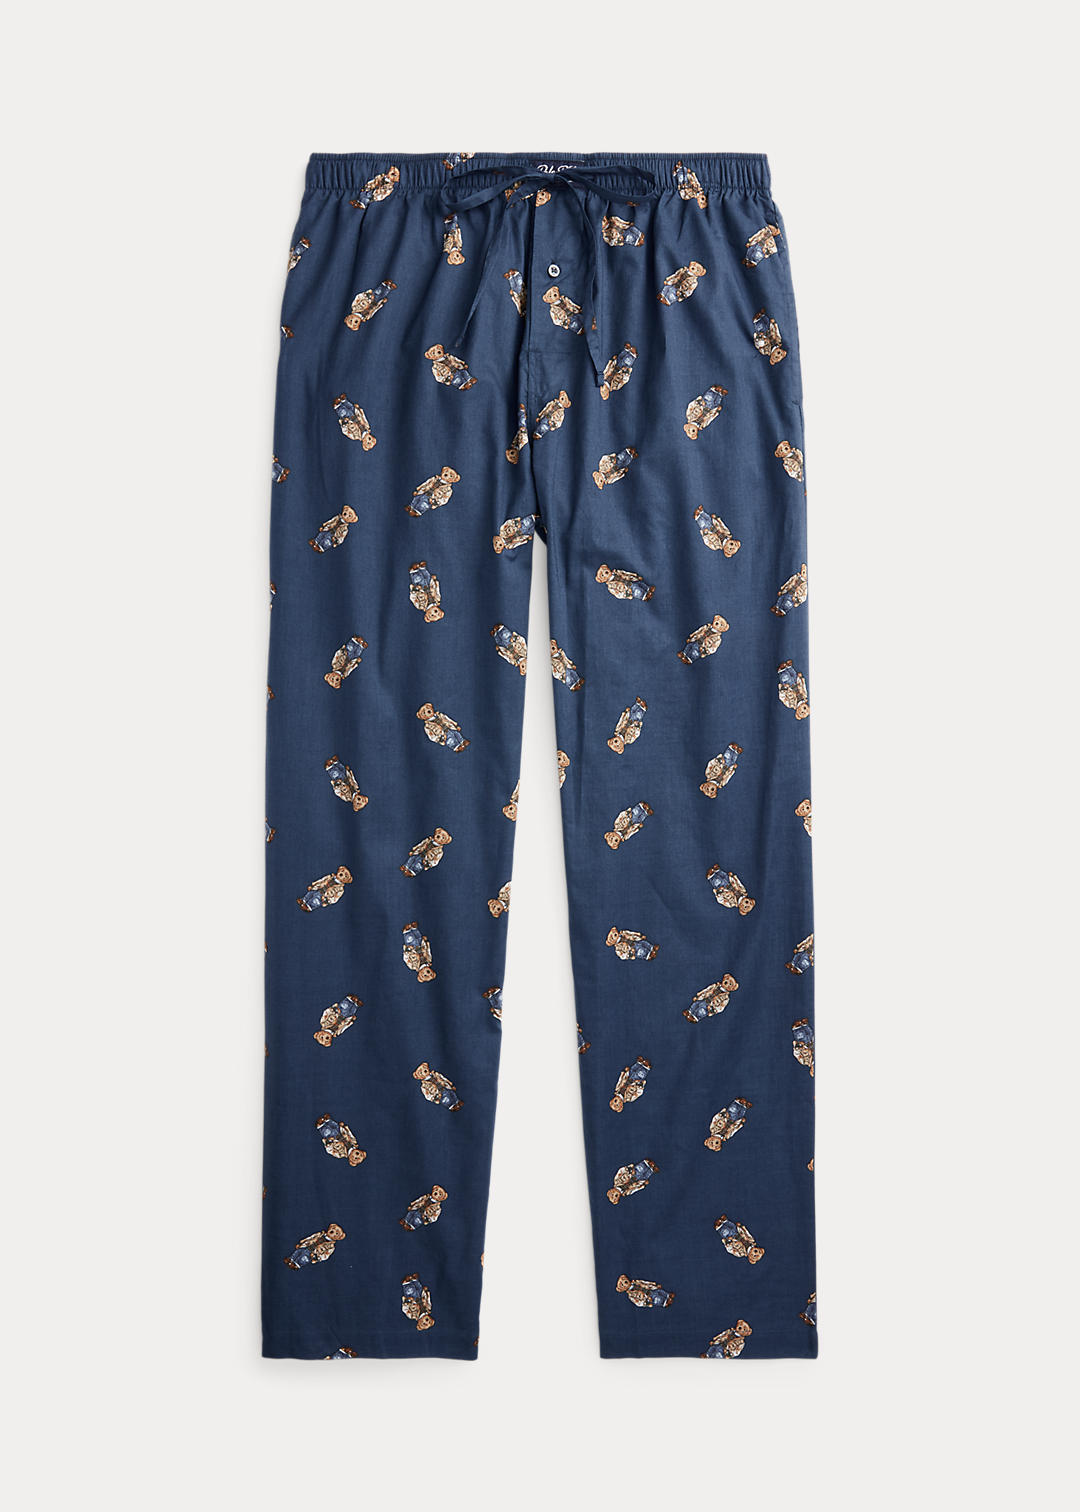 Polo Ralph Lauren Polo Bear Print Jogger Pajama Pants